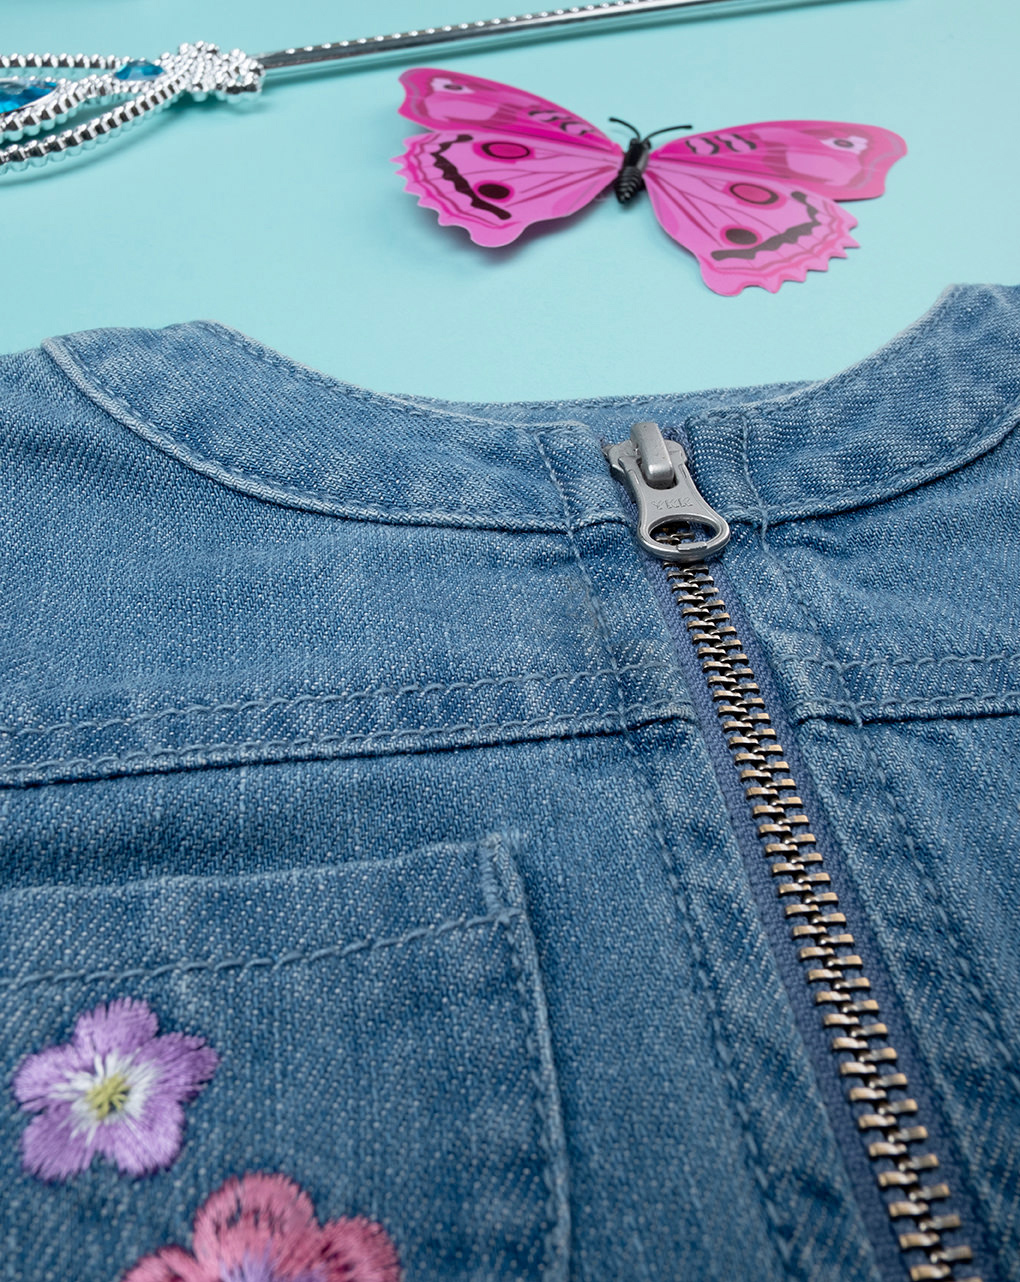 βρεφικό τζιν μπουφάν μπλε με λουλούδια για κορίτσι - Prénatal